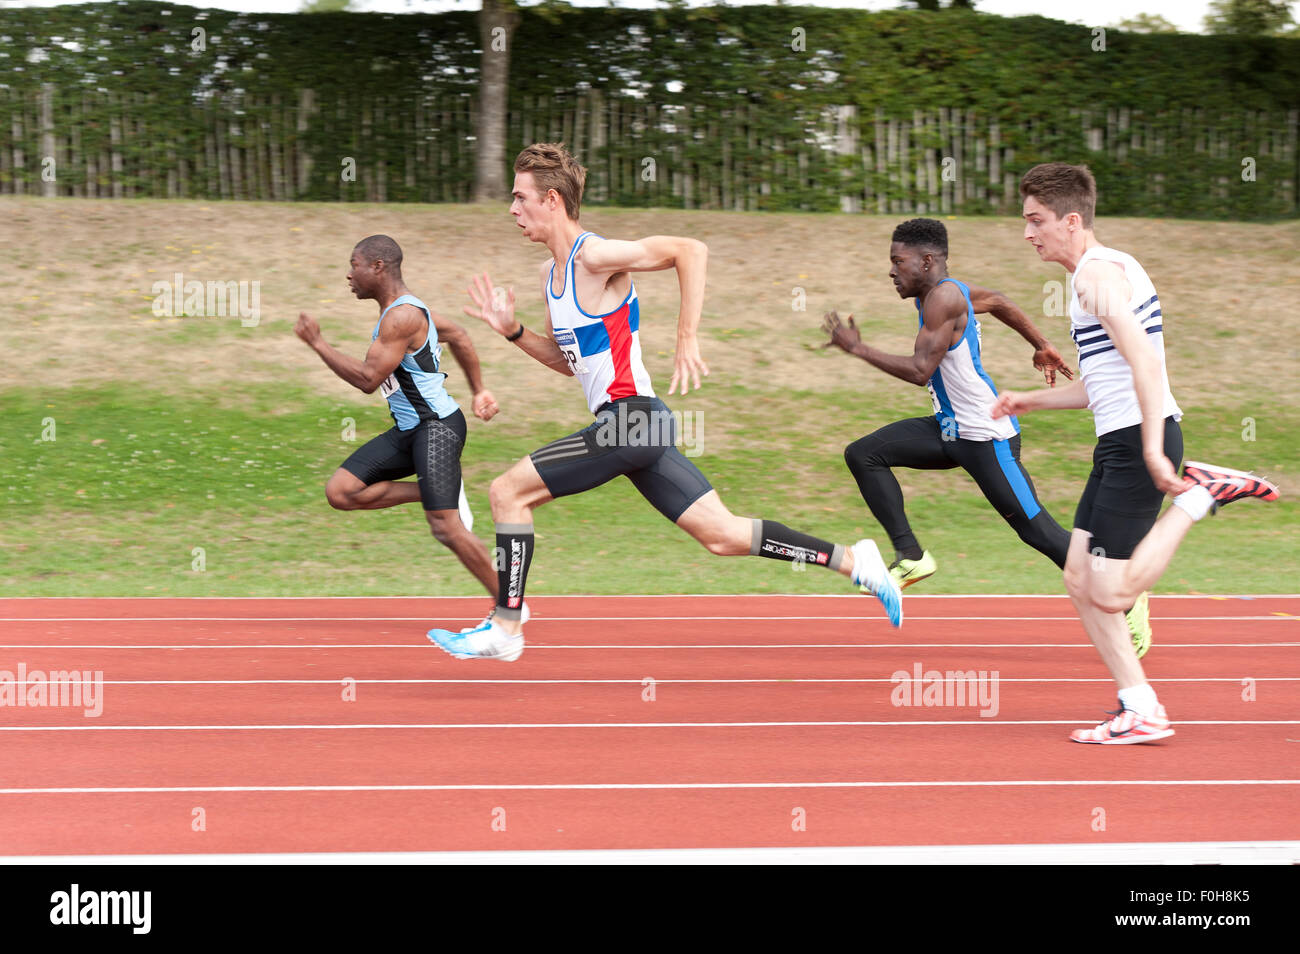 Le sport pour tous les 100m sprint masculin race centaines de mètres tourner à grande vitesse les athlètes sprinters en compétition sur piste et field event Banque D'Images